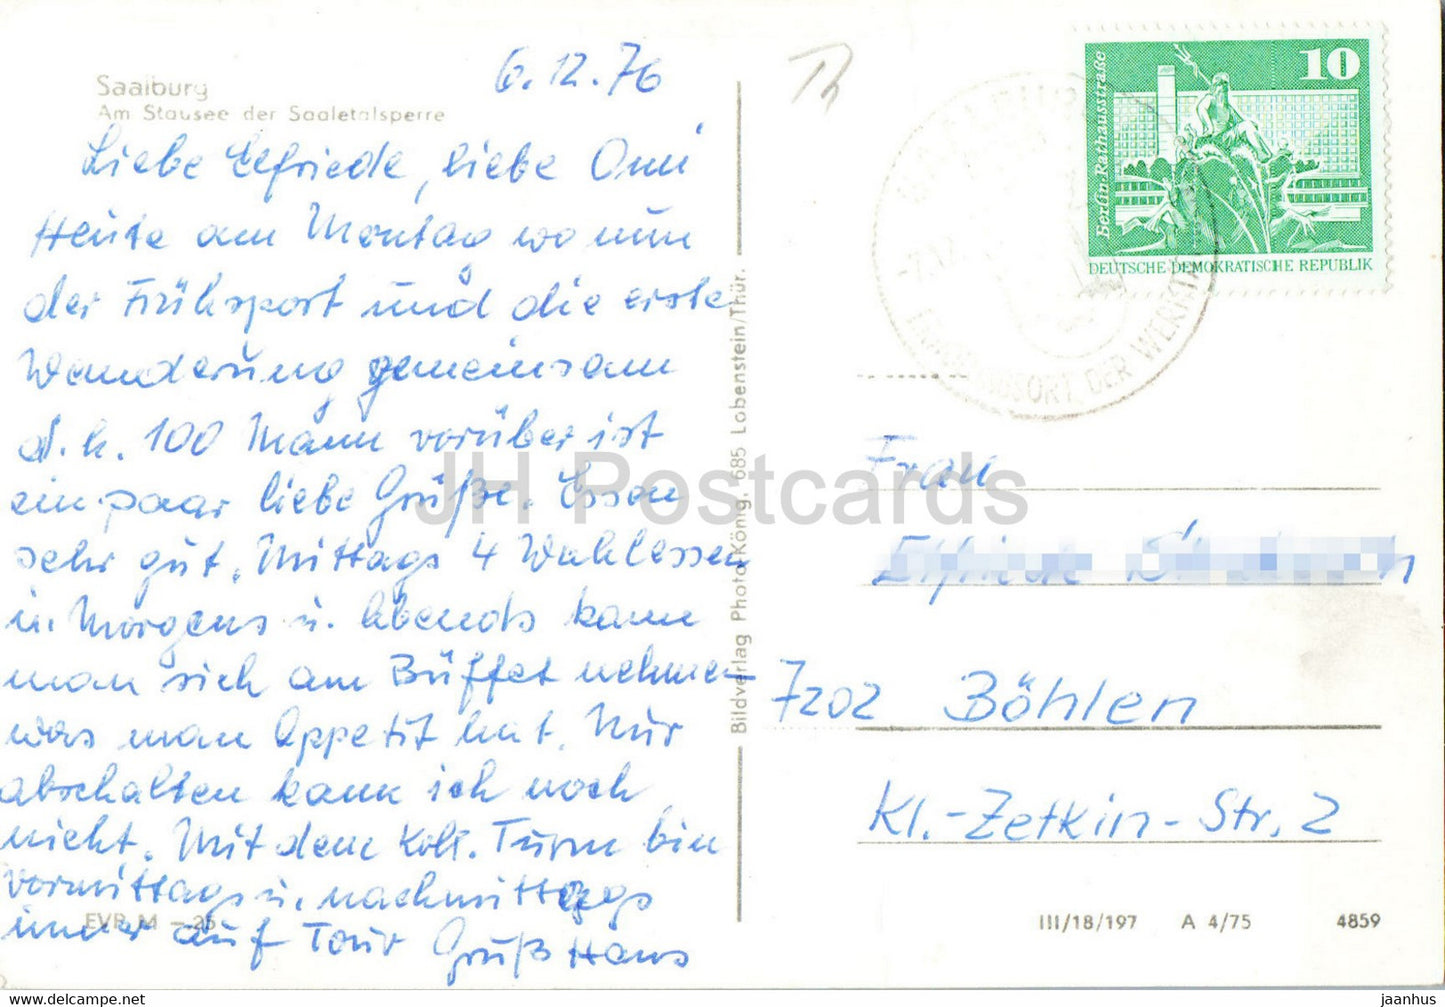 Saalburg - Am Stausee der Saaletalsperre - Brücke - alte Postkarte - 1976 - Deutschland DDR - gebraucht